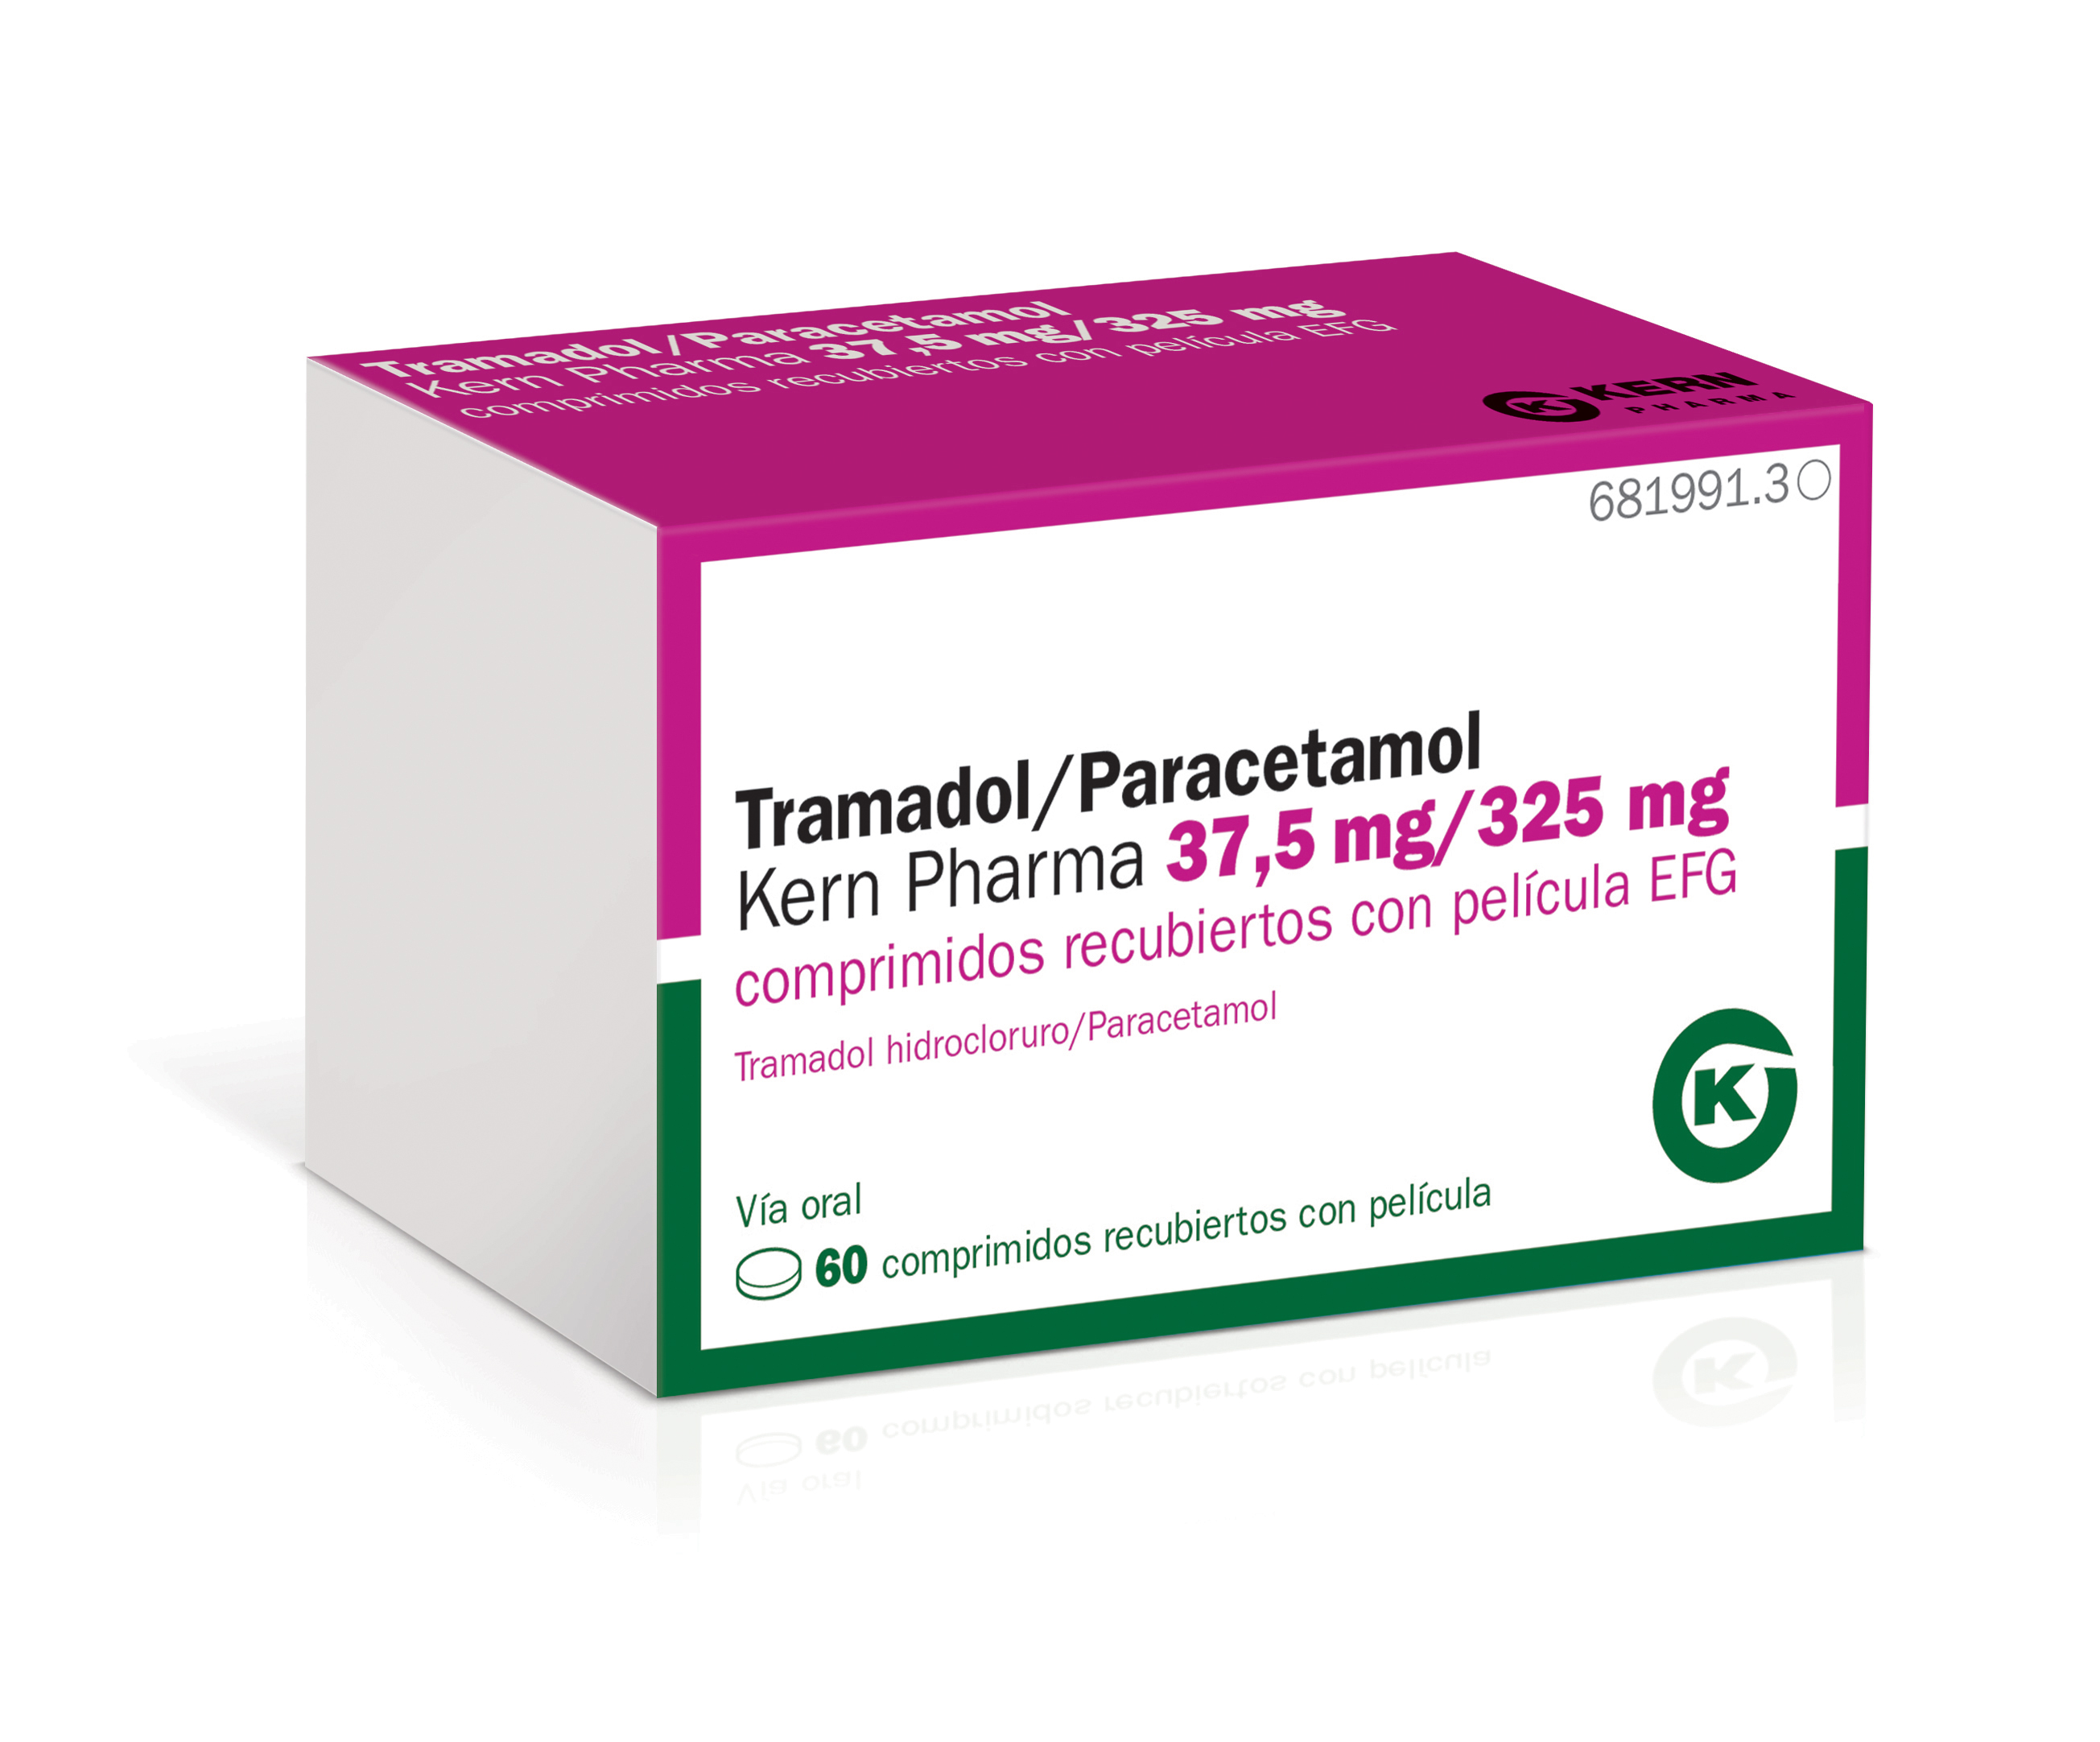 tramadol-paracetamol-kern-pharma-37-5mg-325mg-comprimidos-recubiertos-con-pel-cula-efg